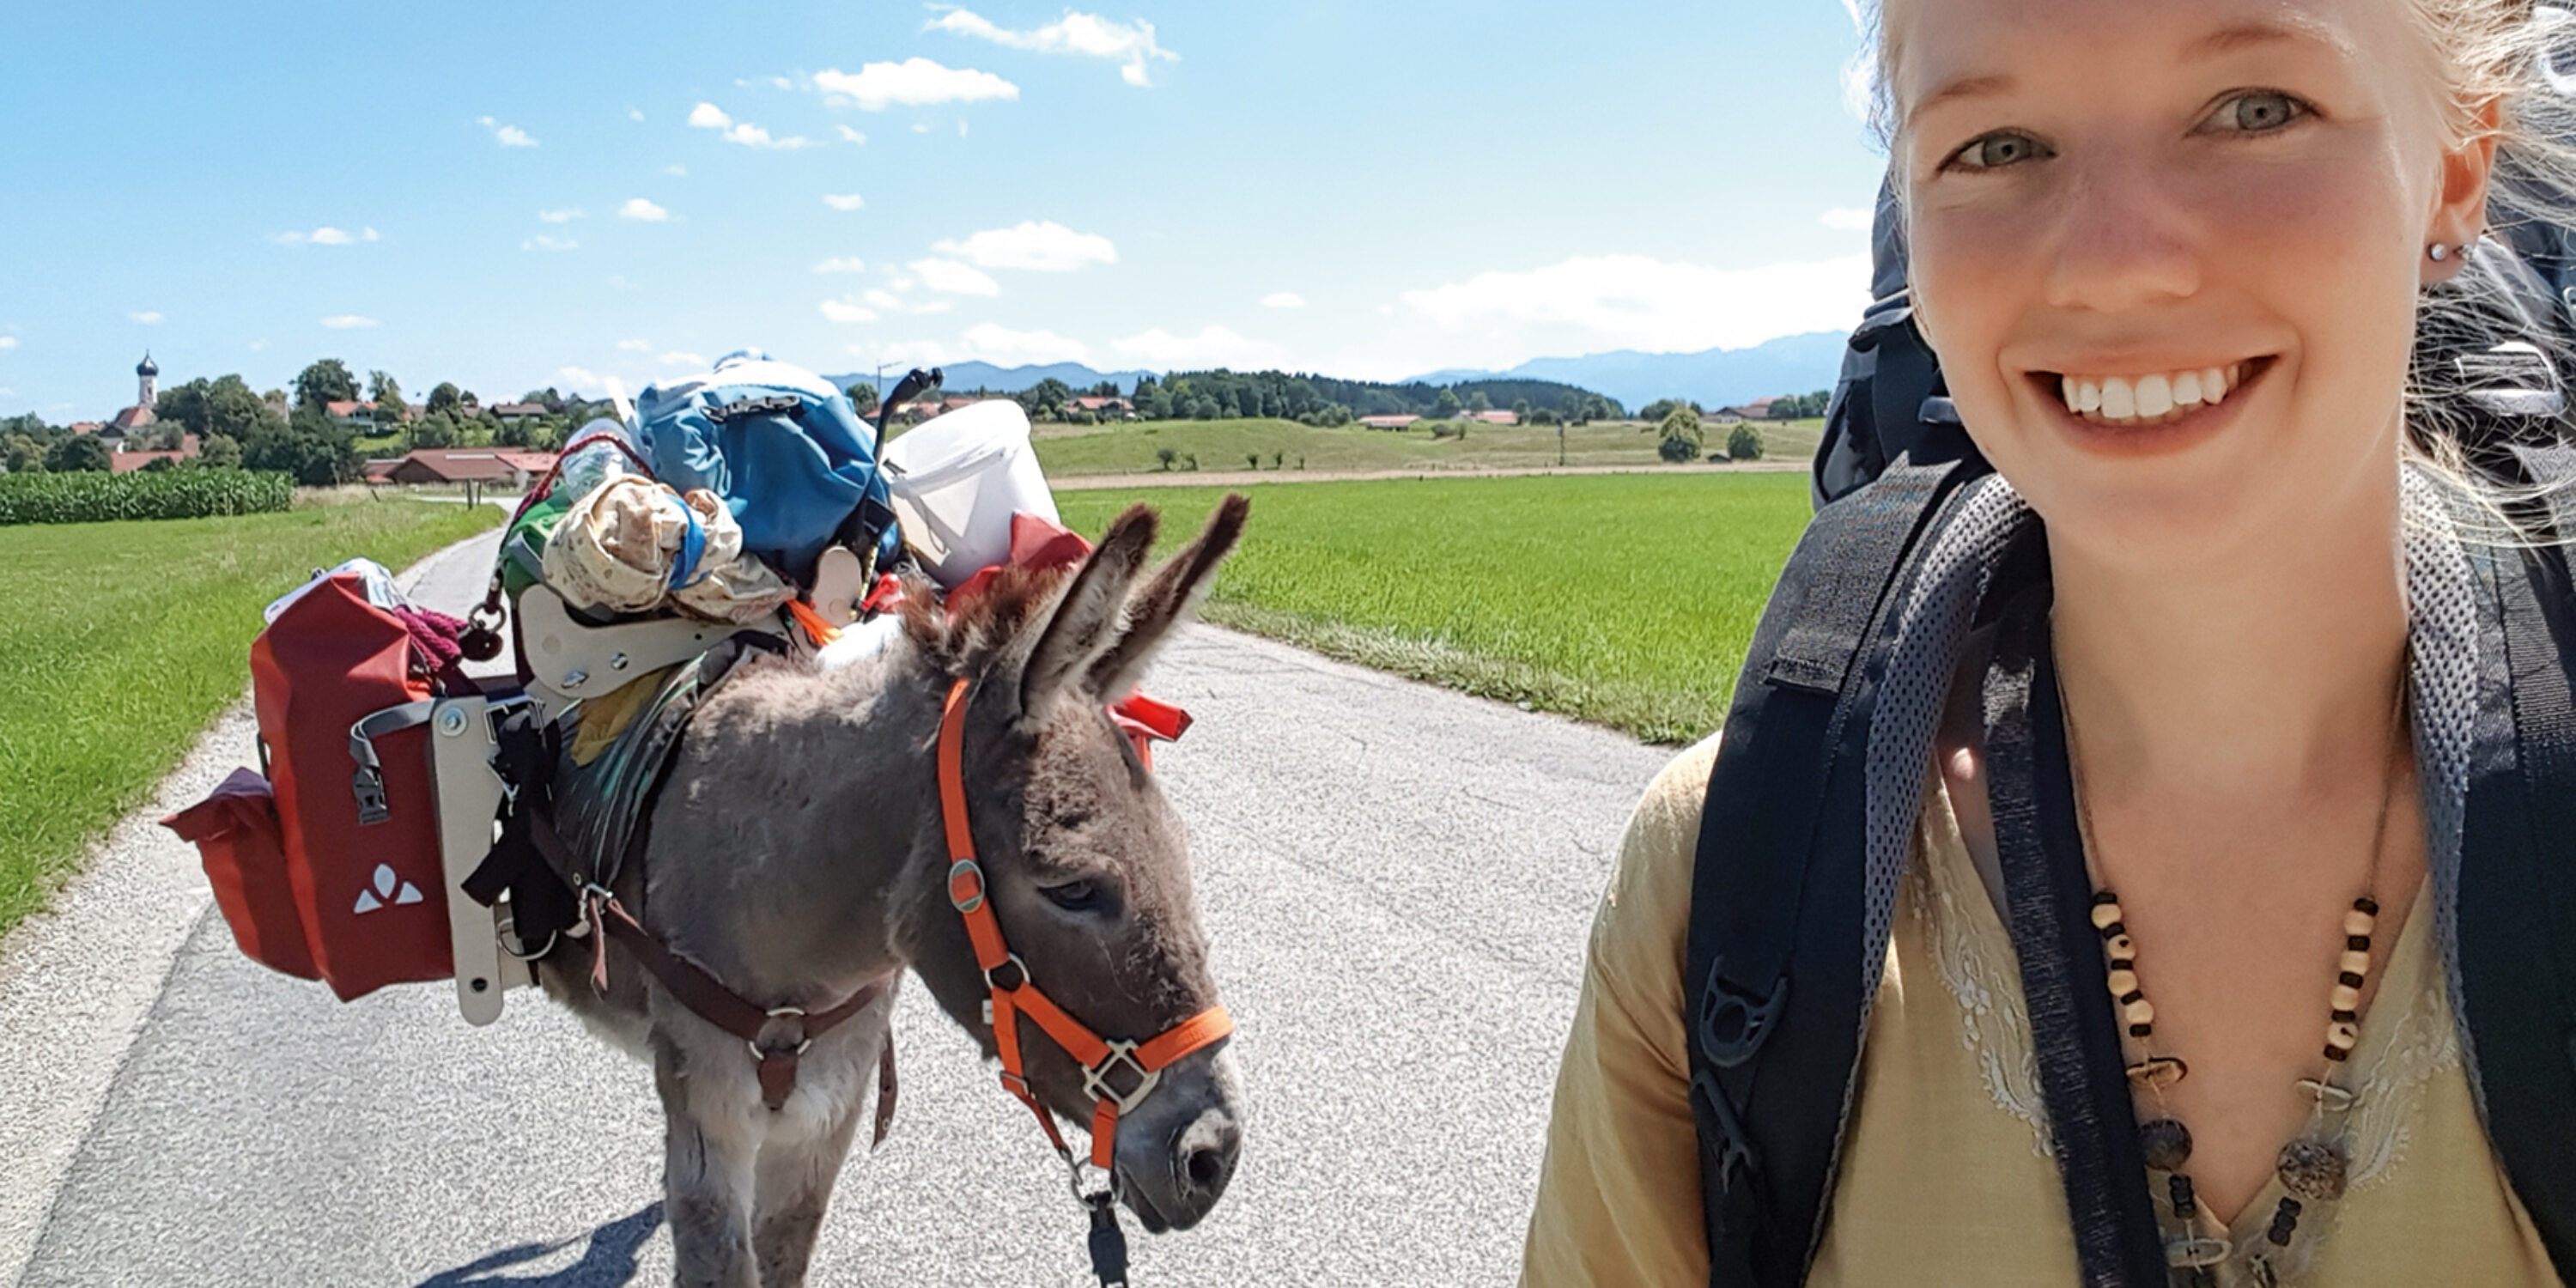 Lotta Lubkoll mit ihrem Esel Jonny auf Reise